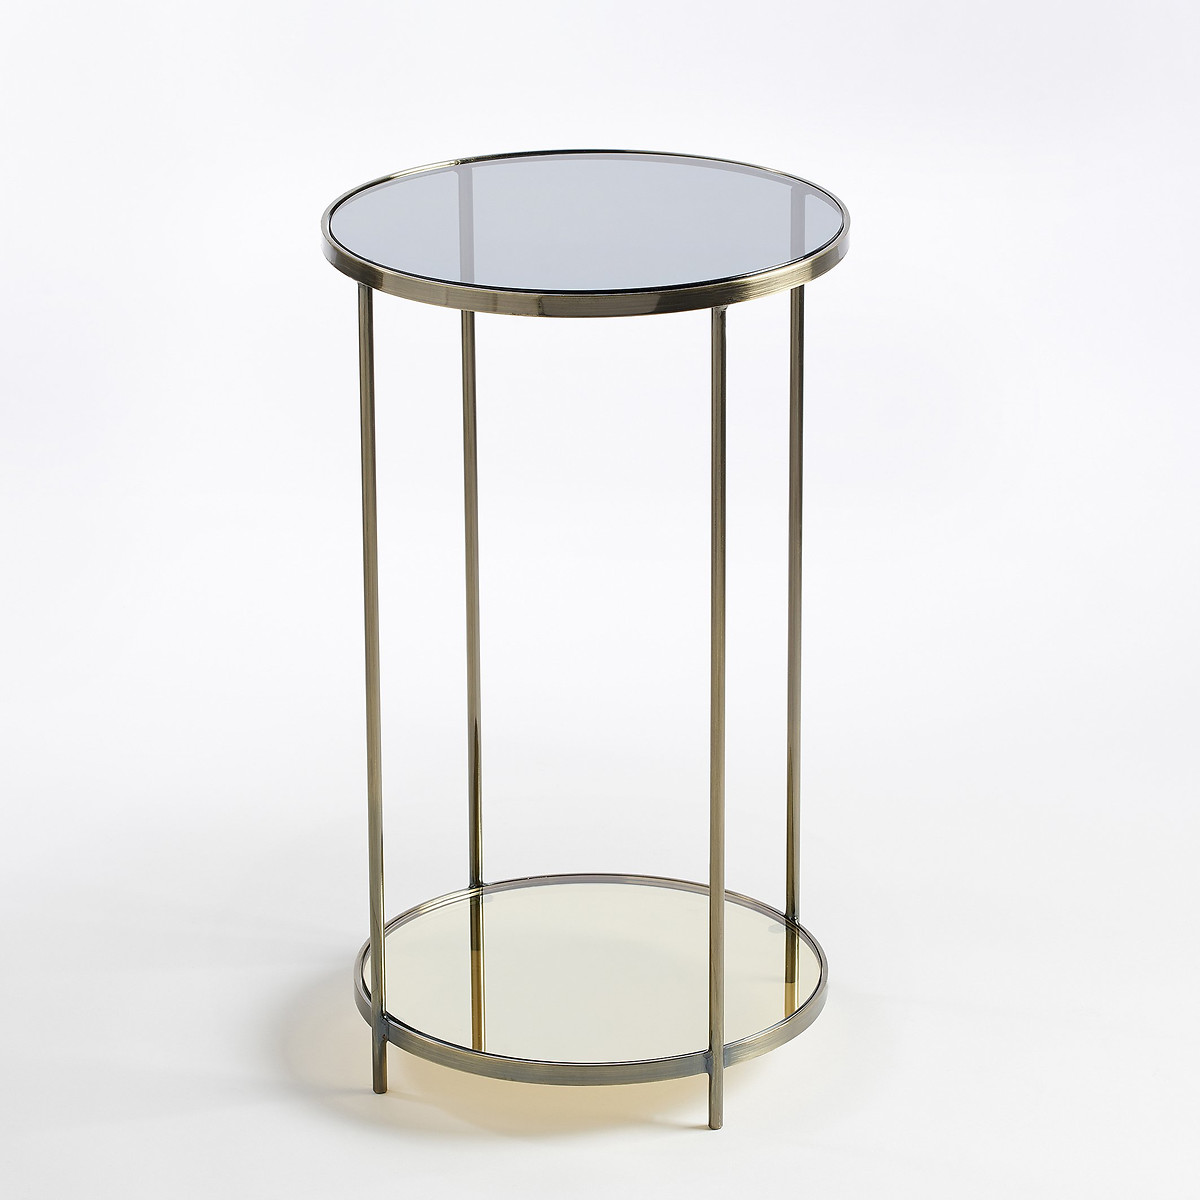 Столик круглый Ulupna единый размер золотистый прямоугольный журнальный столик из закаленного стекла sybil единый размер золотистый